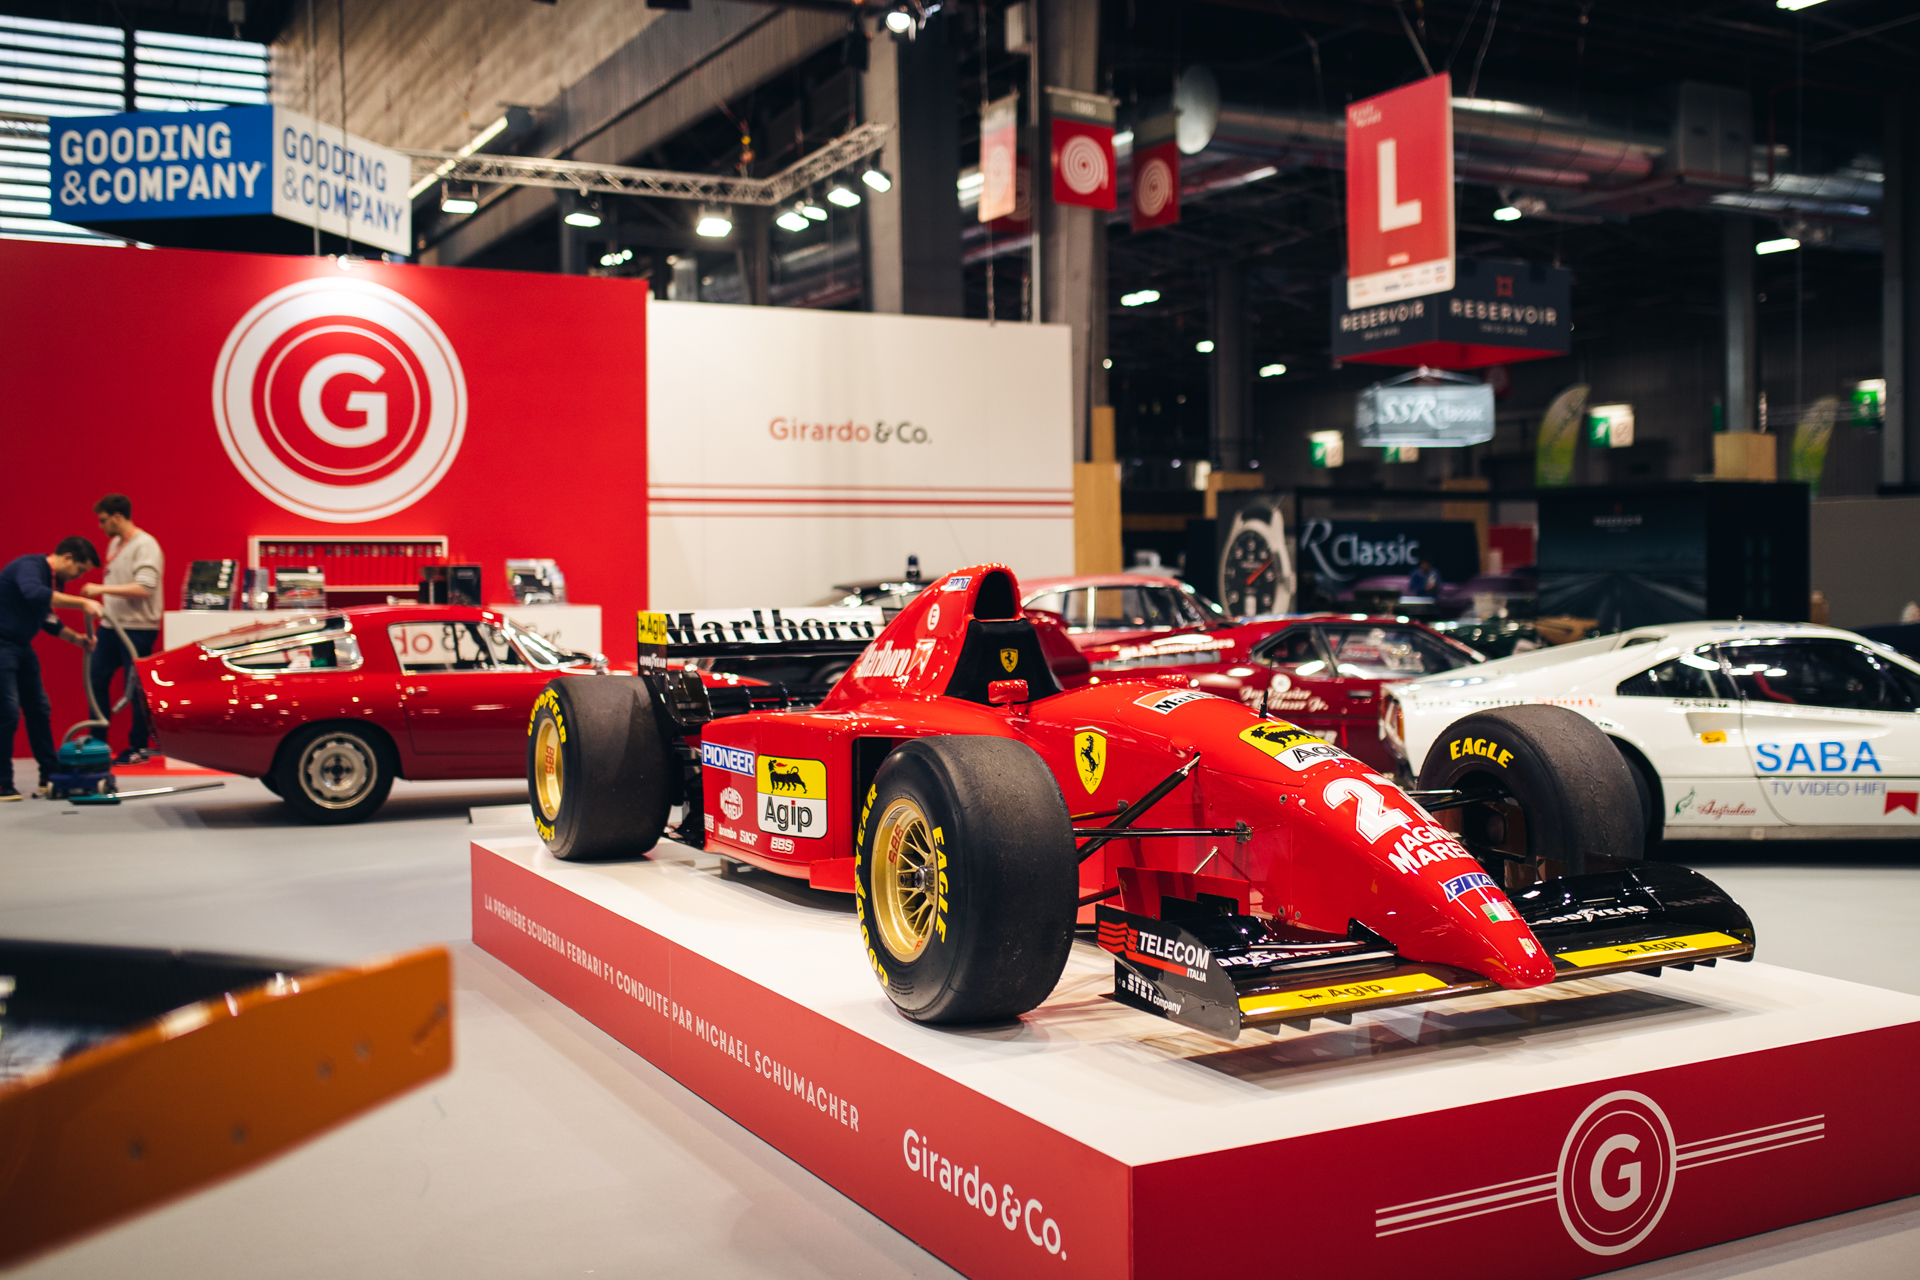 Este Ferrari F1 foi conduzido por Schumacher no Estoril e está à venda